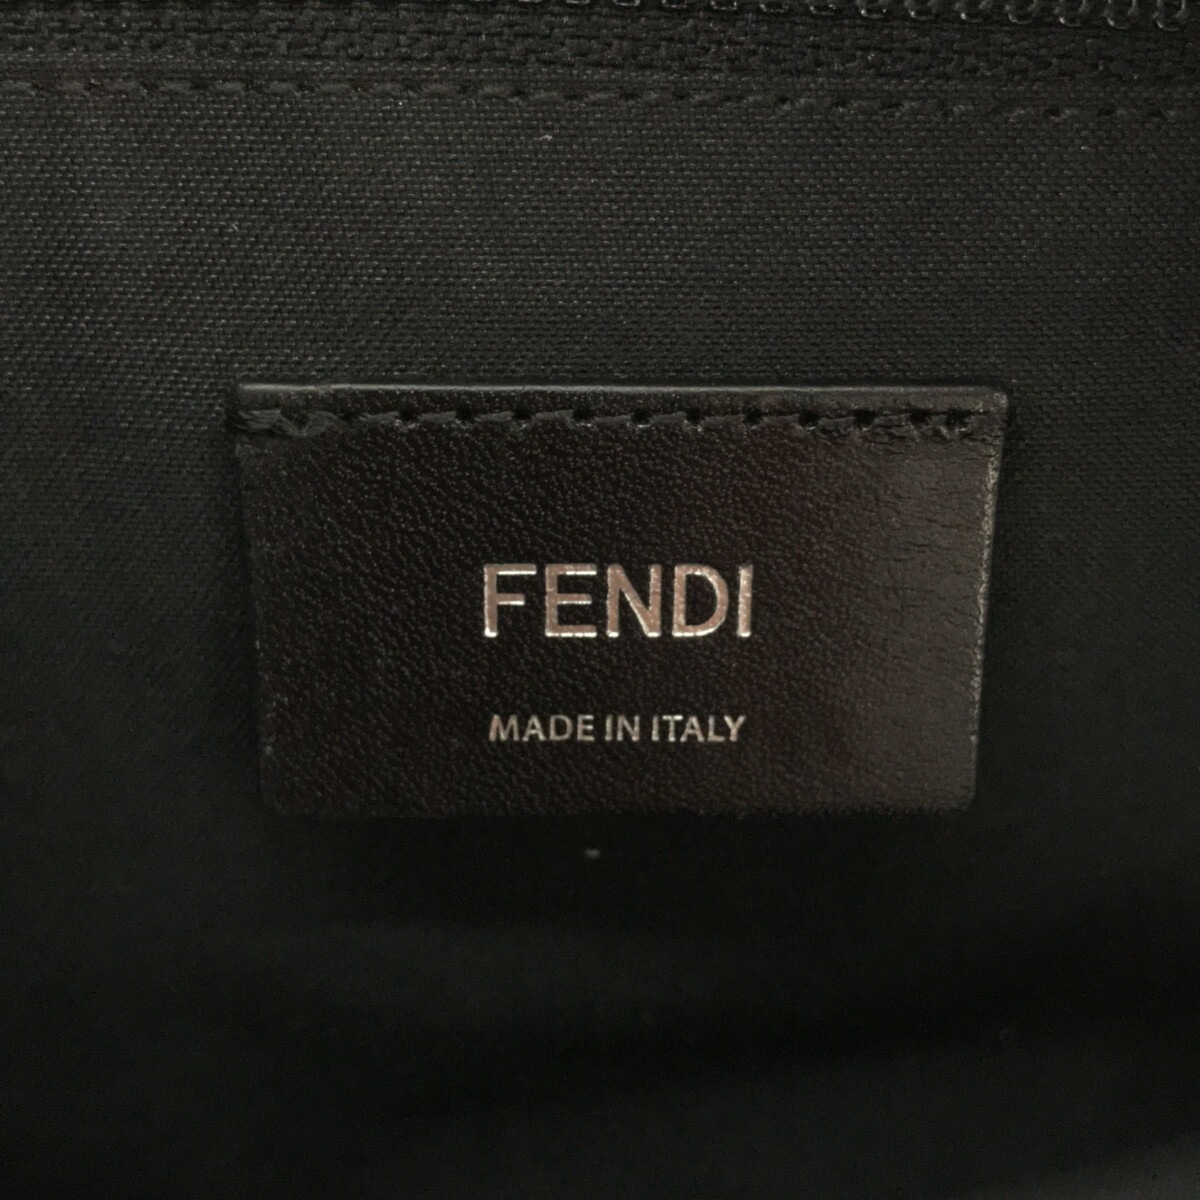 FENDI(フェンディ) モンスター ミニ 黒×白×マルチ ナイロン×レザー